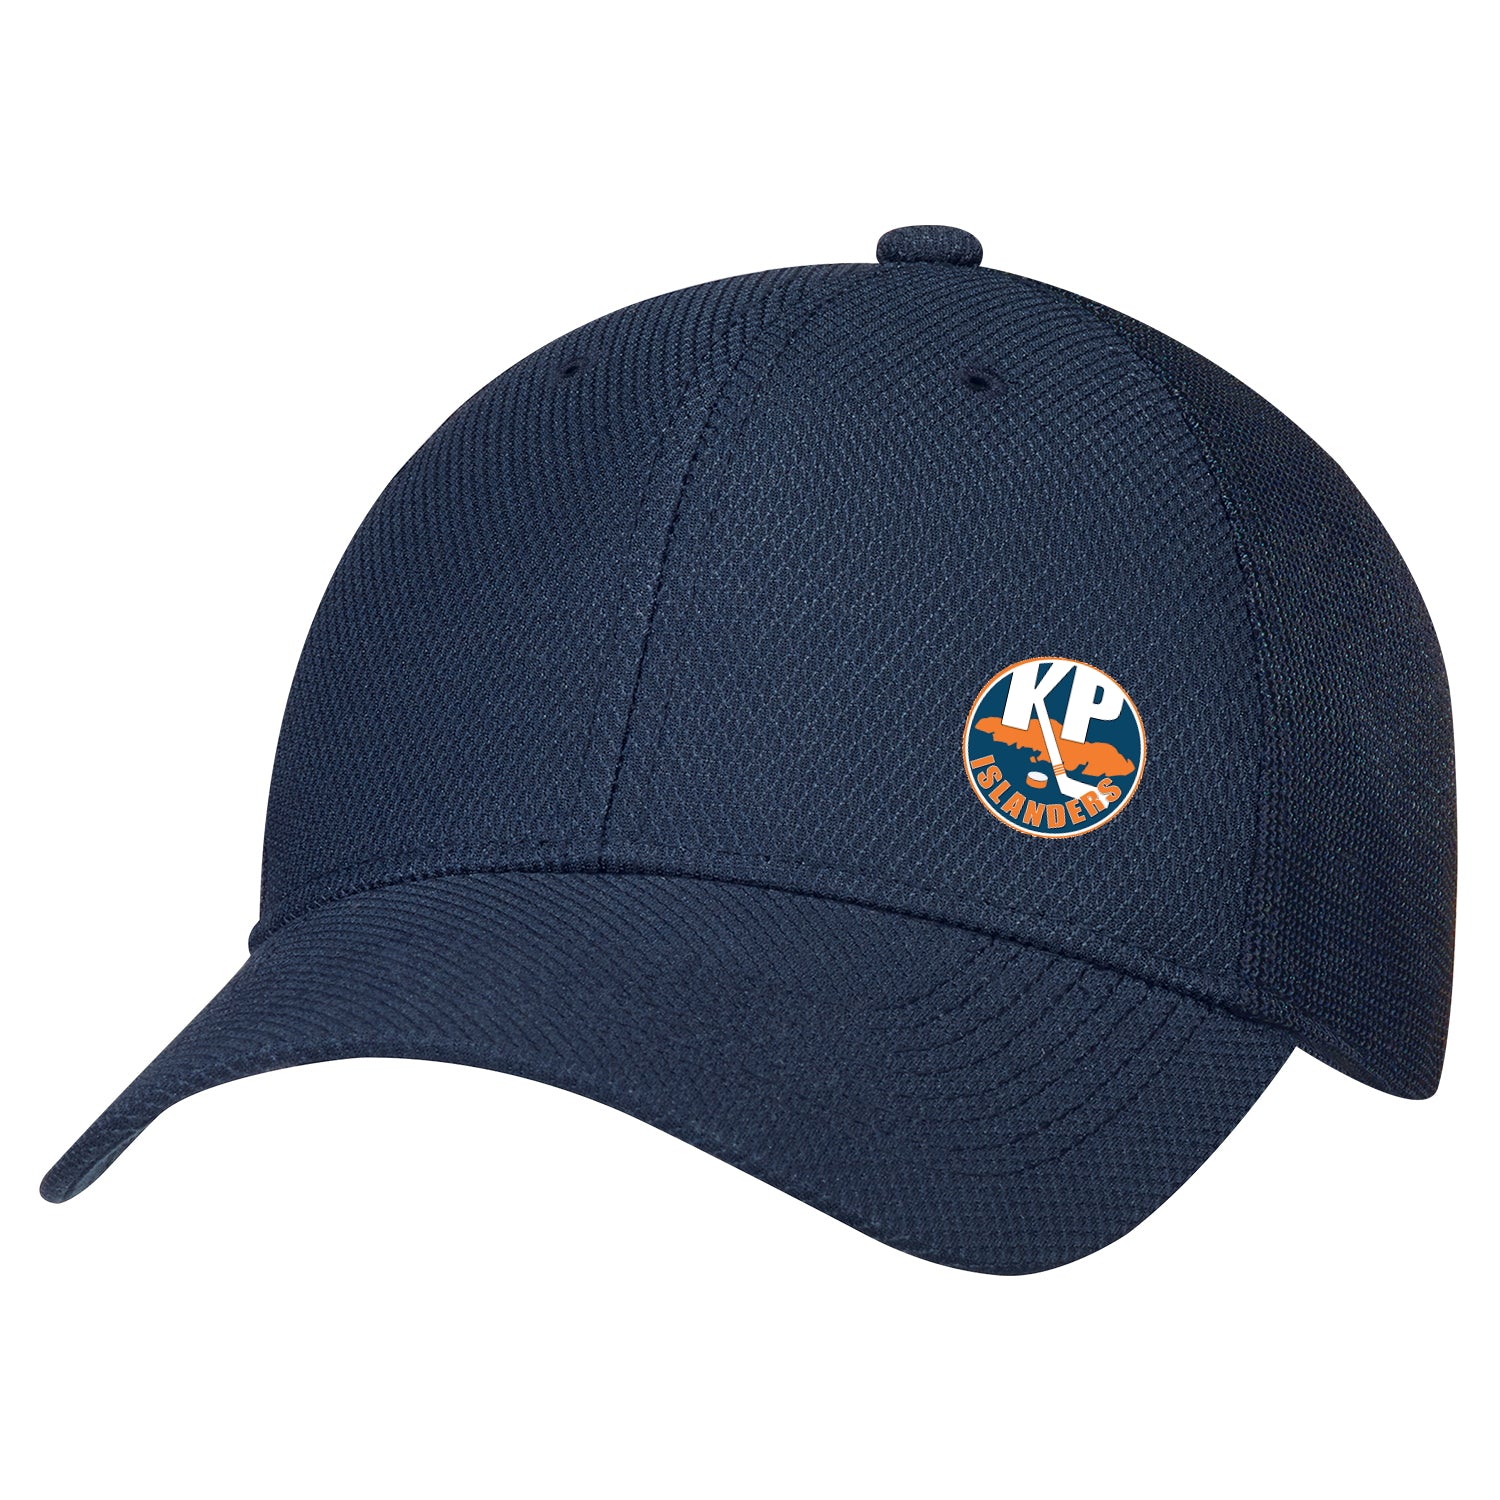 KP Islanders Diamond Mesh Hat